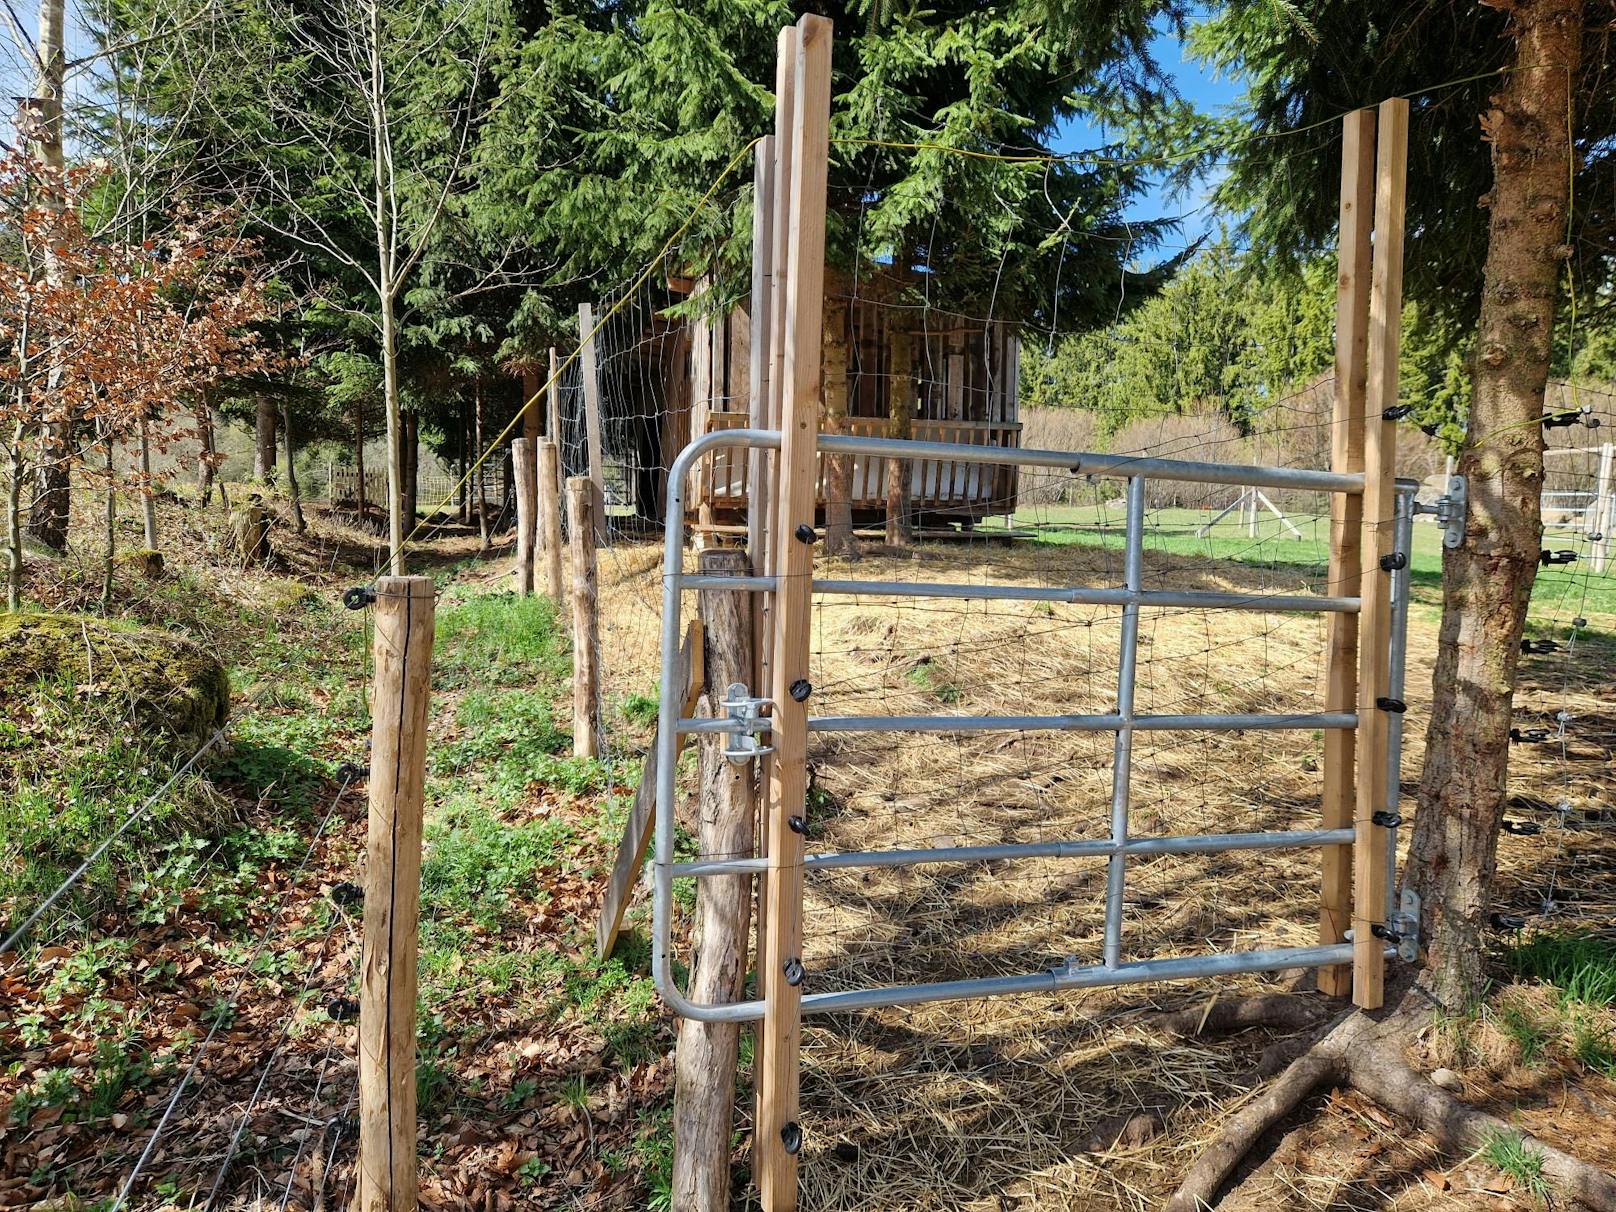 Der Bauer baute in Eigenregie Sicherheitszäune für seine Herde auf.